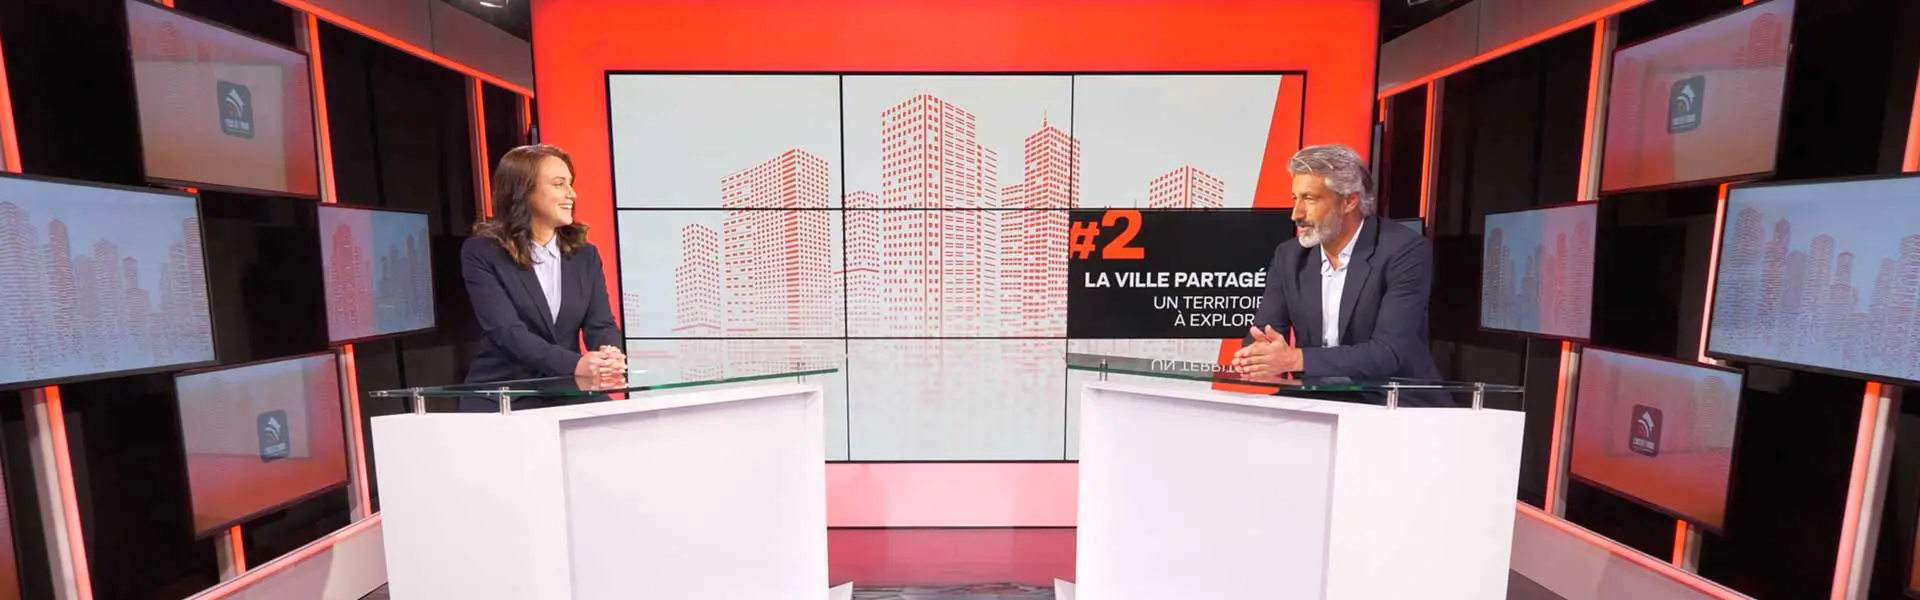 Plateau TV Paris - Mon Studio TV